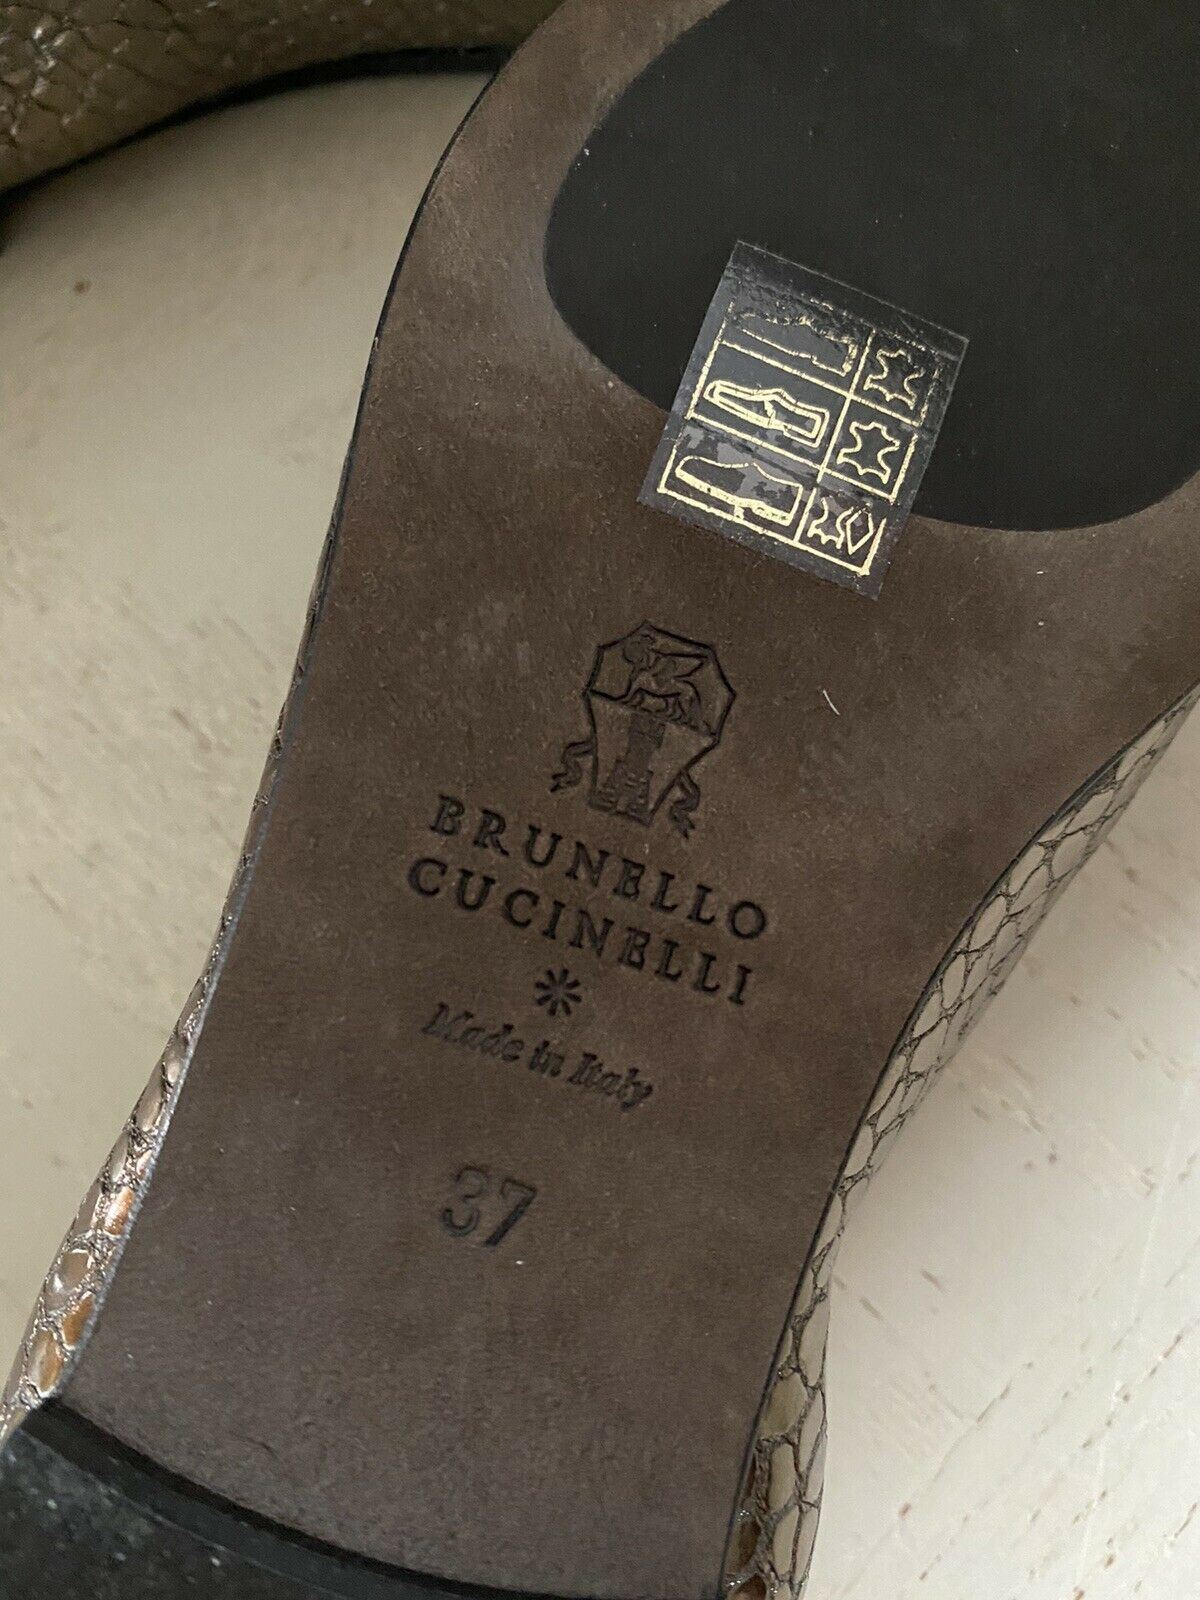 NIB $795 Женские лоферы на плоской подошве Brunello Cucinelli, золото 7 США (37 евро)